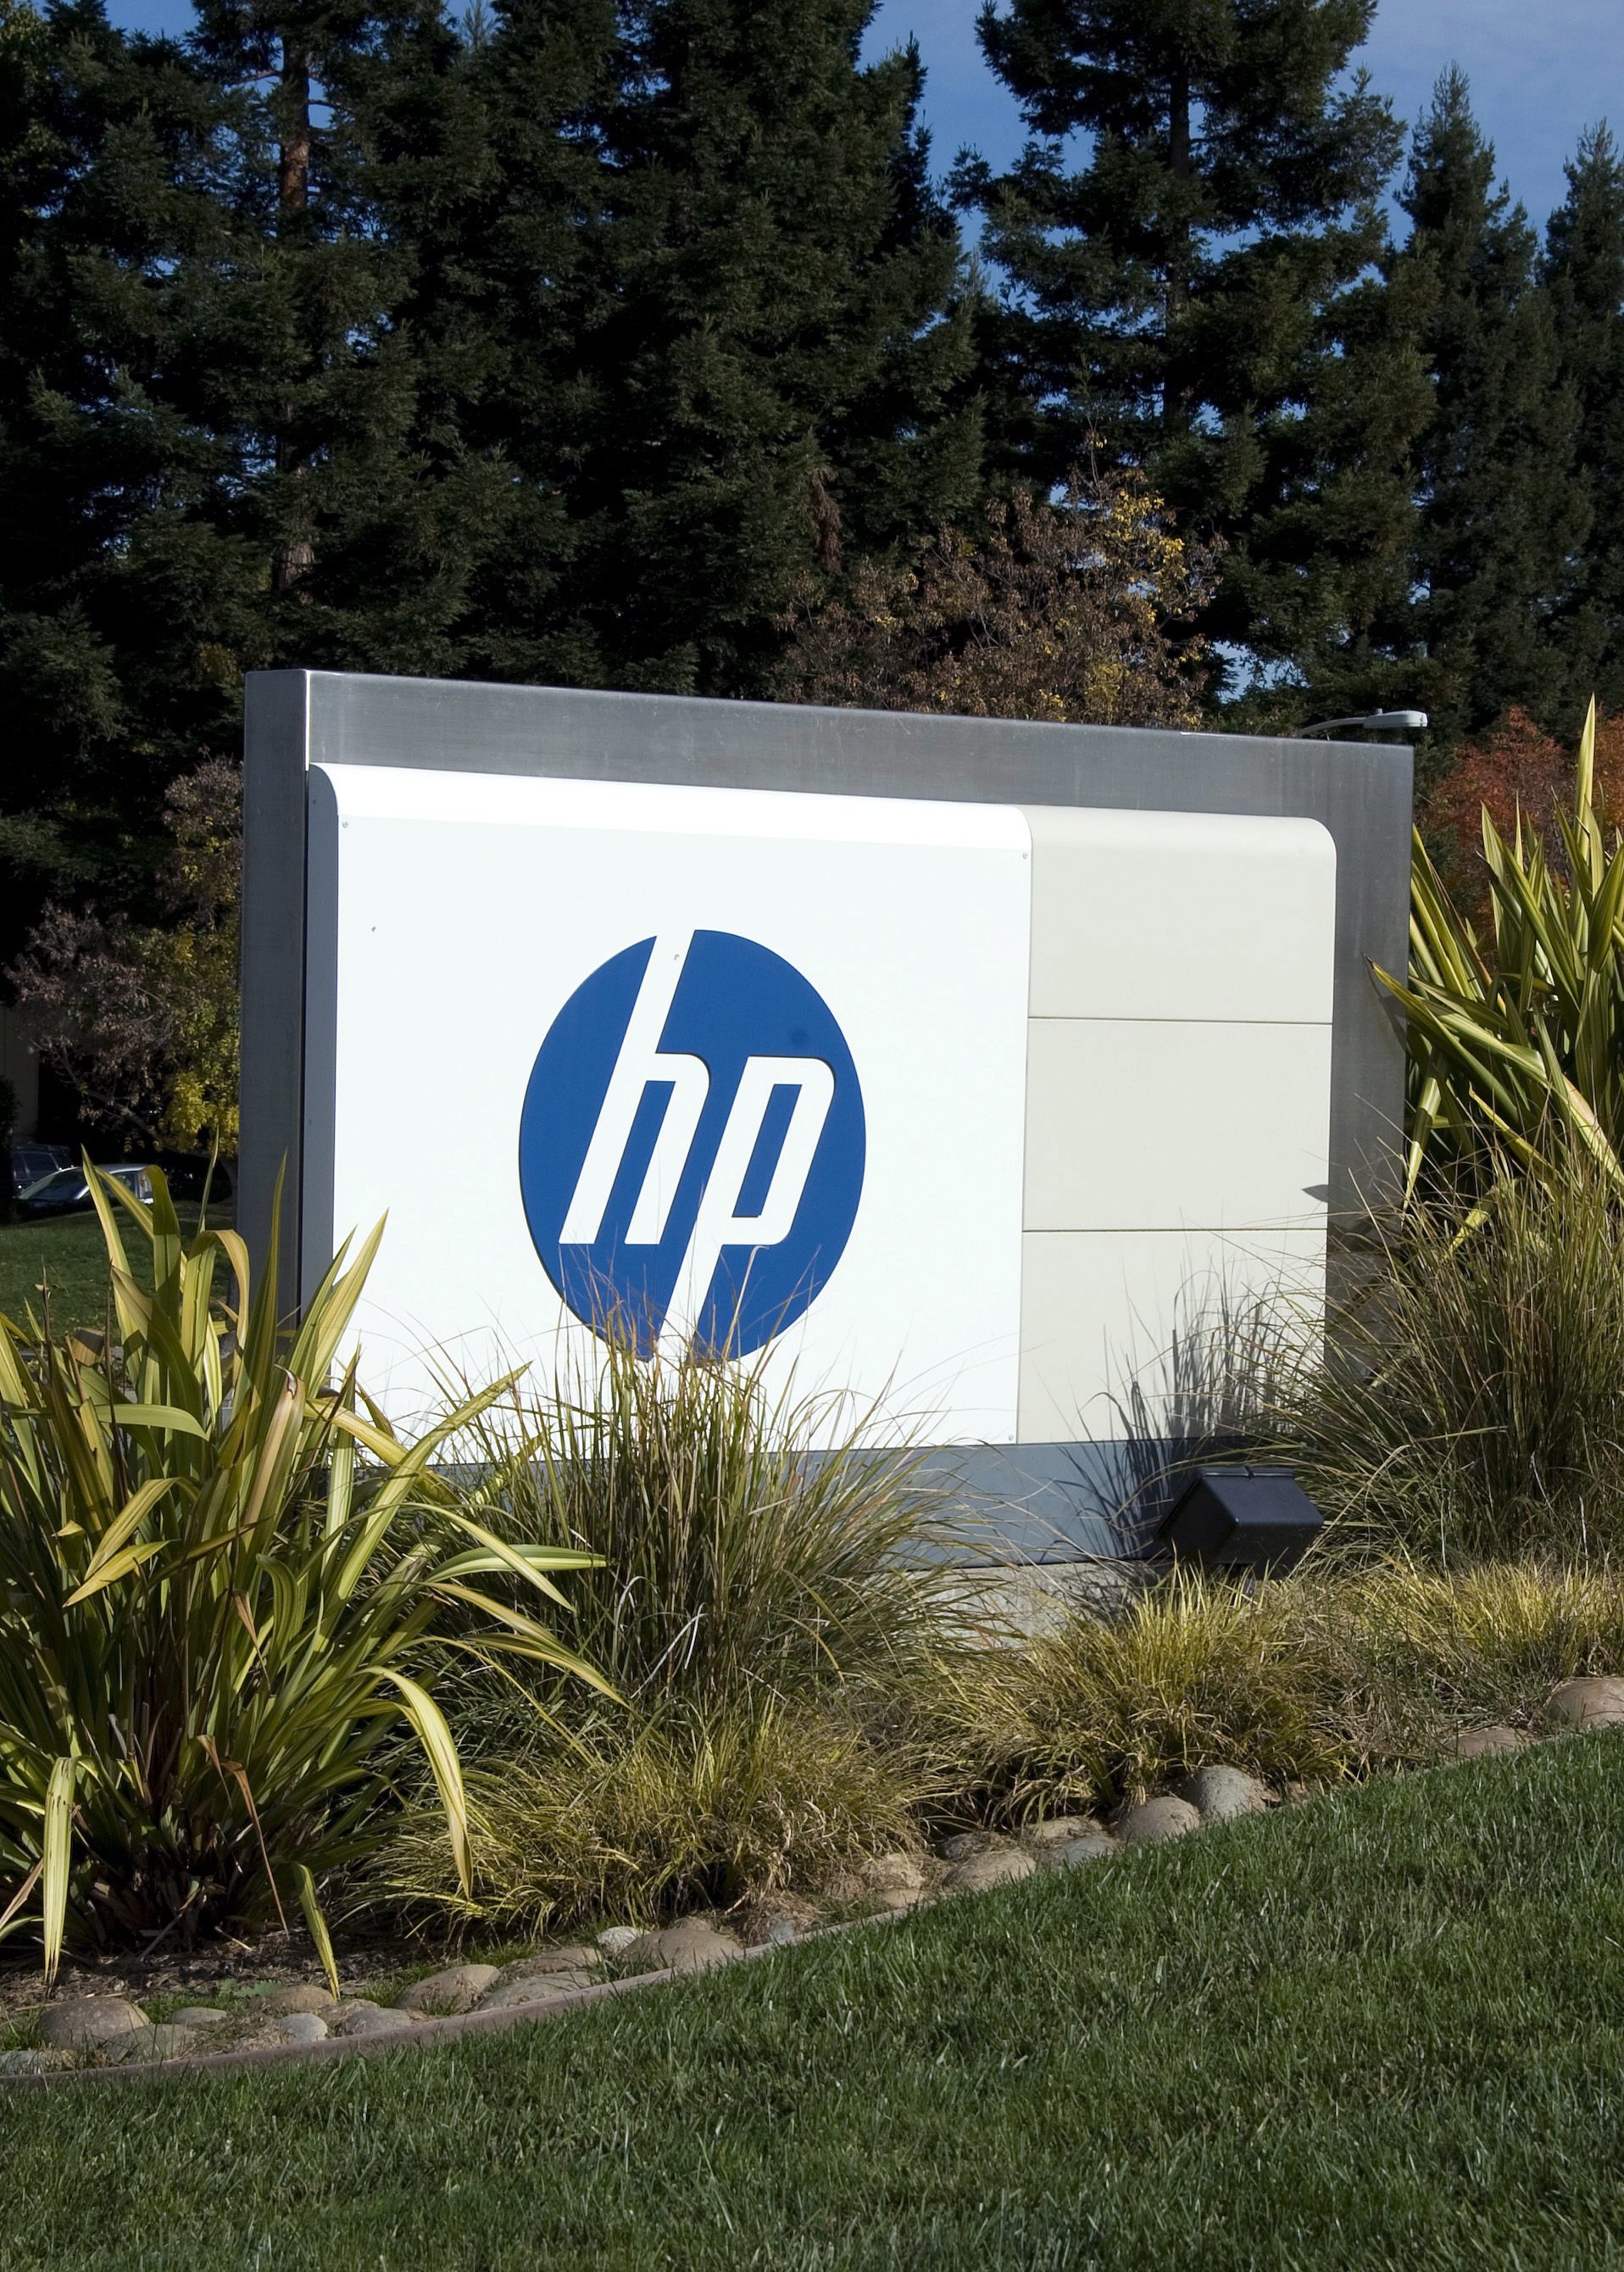 HP ще закрие 29 000 работни места до 2014 година - с 2000 повече от очакваното